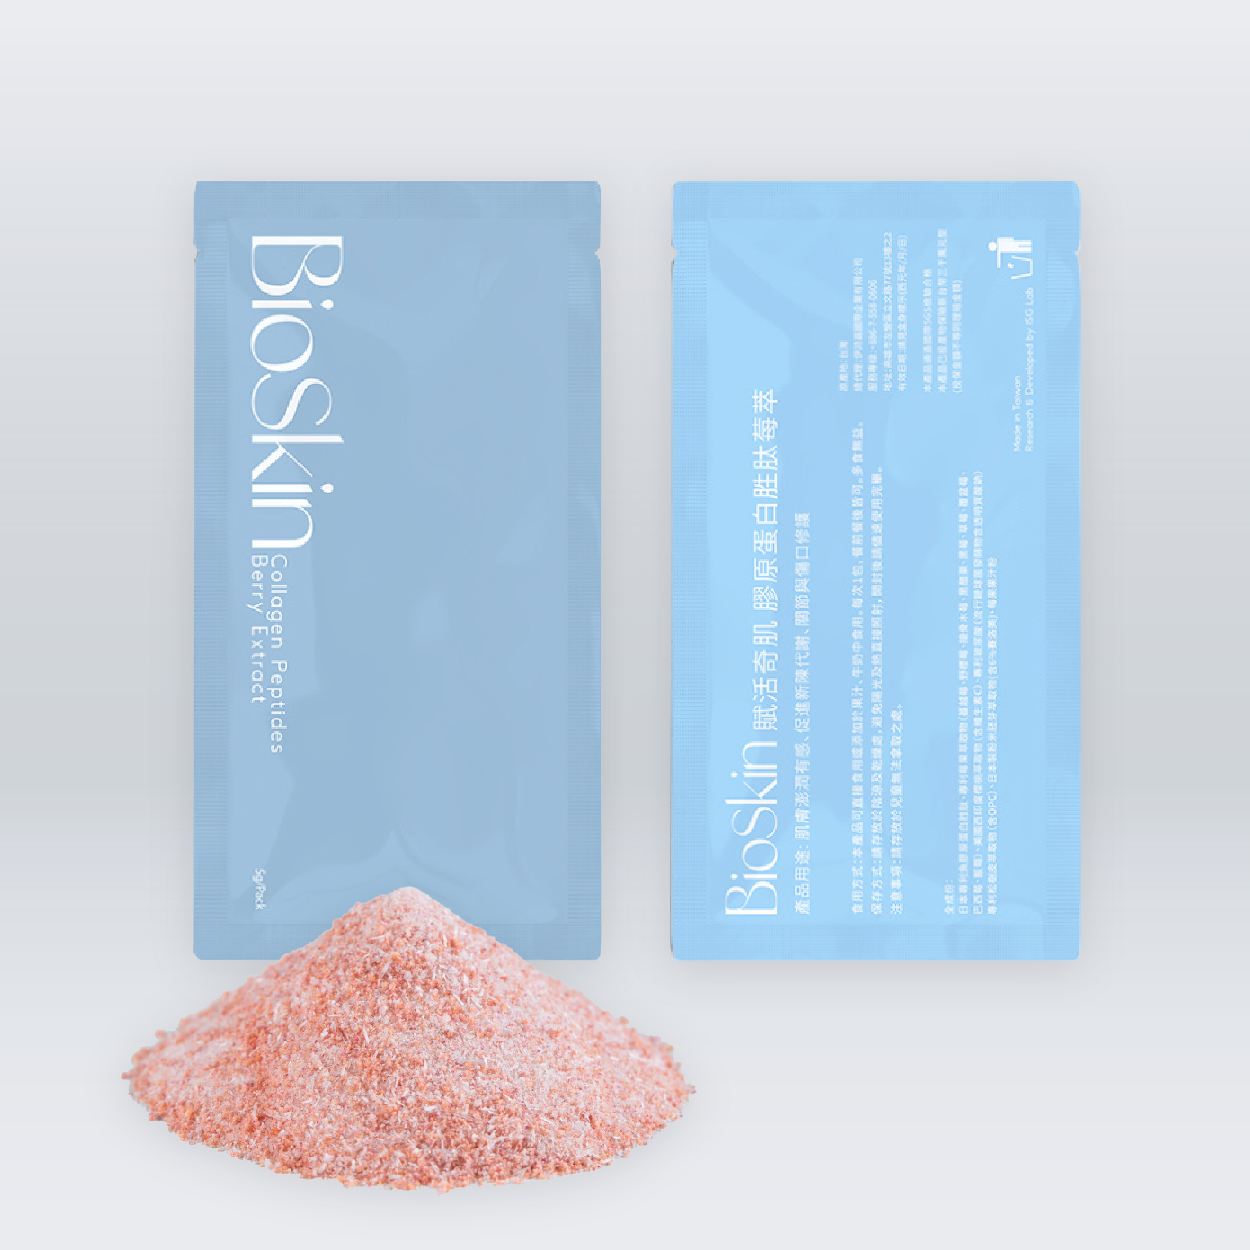 BioSkin 膠原蛋白胜肽莓萃 100%魚皮萃取無腥味 肌膚澎潤有感 亮妍氣色